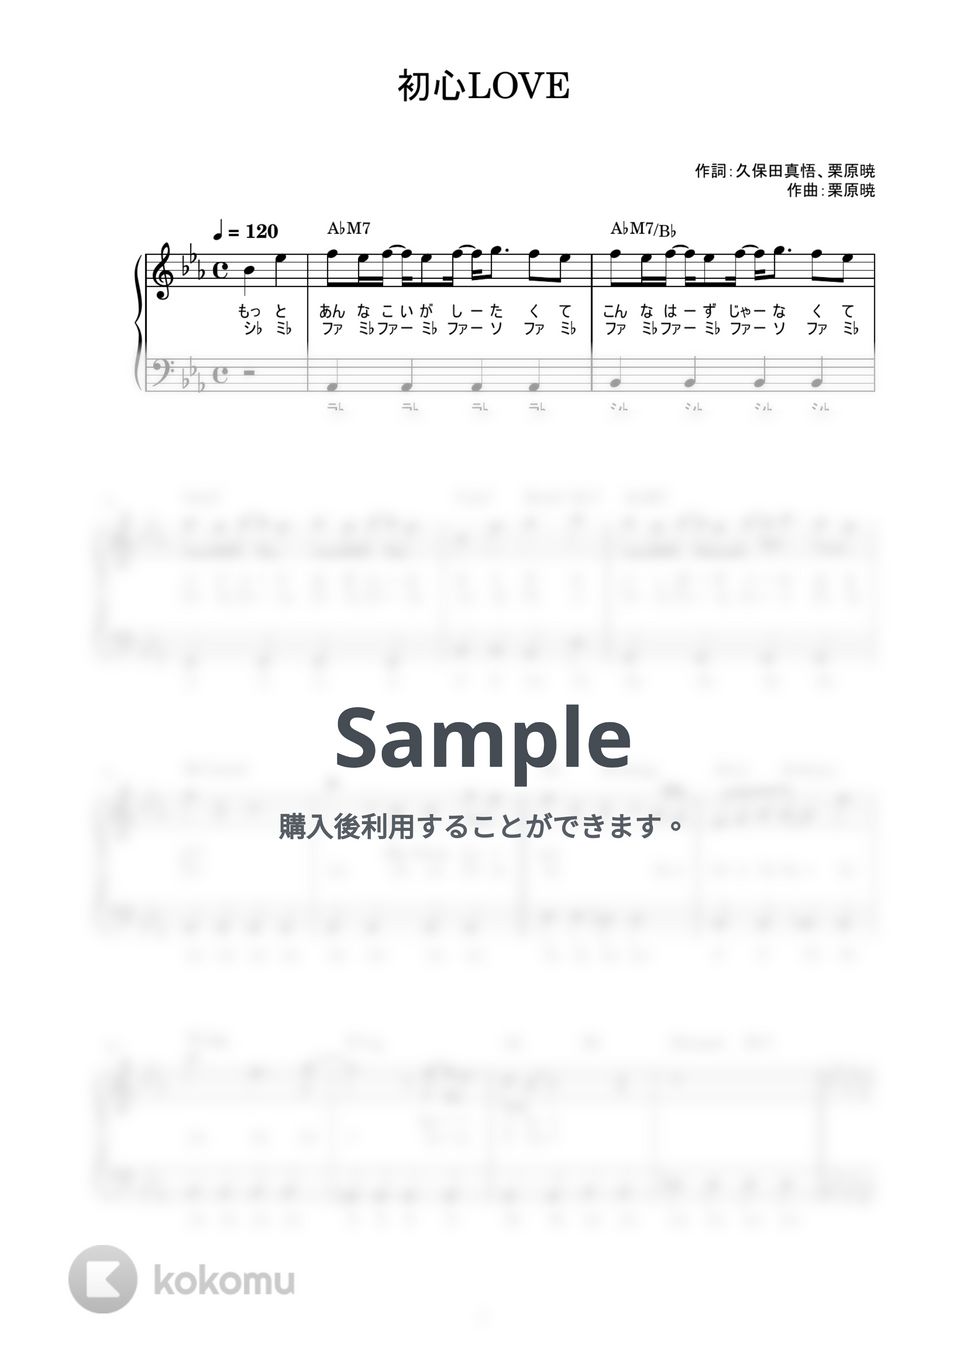 なにわ男子 - 初心LOVE (かんたん / 歌詞付き / ドレミ付き / 初心者) by piano.tokyo